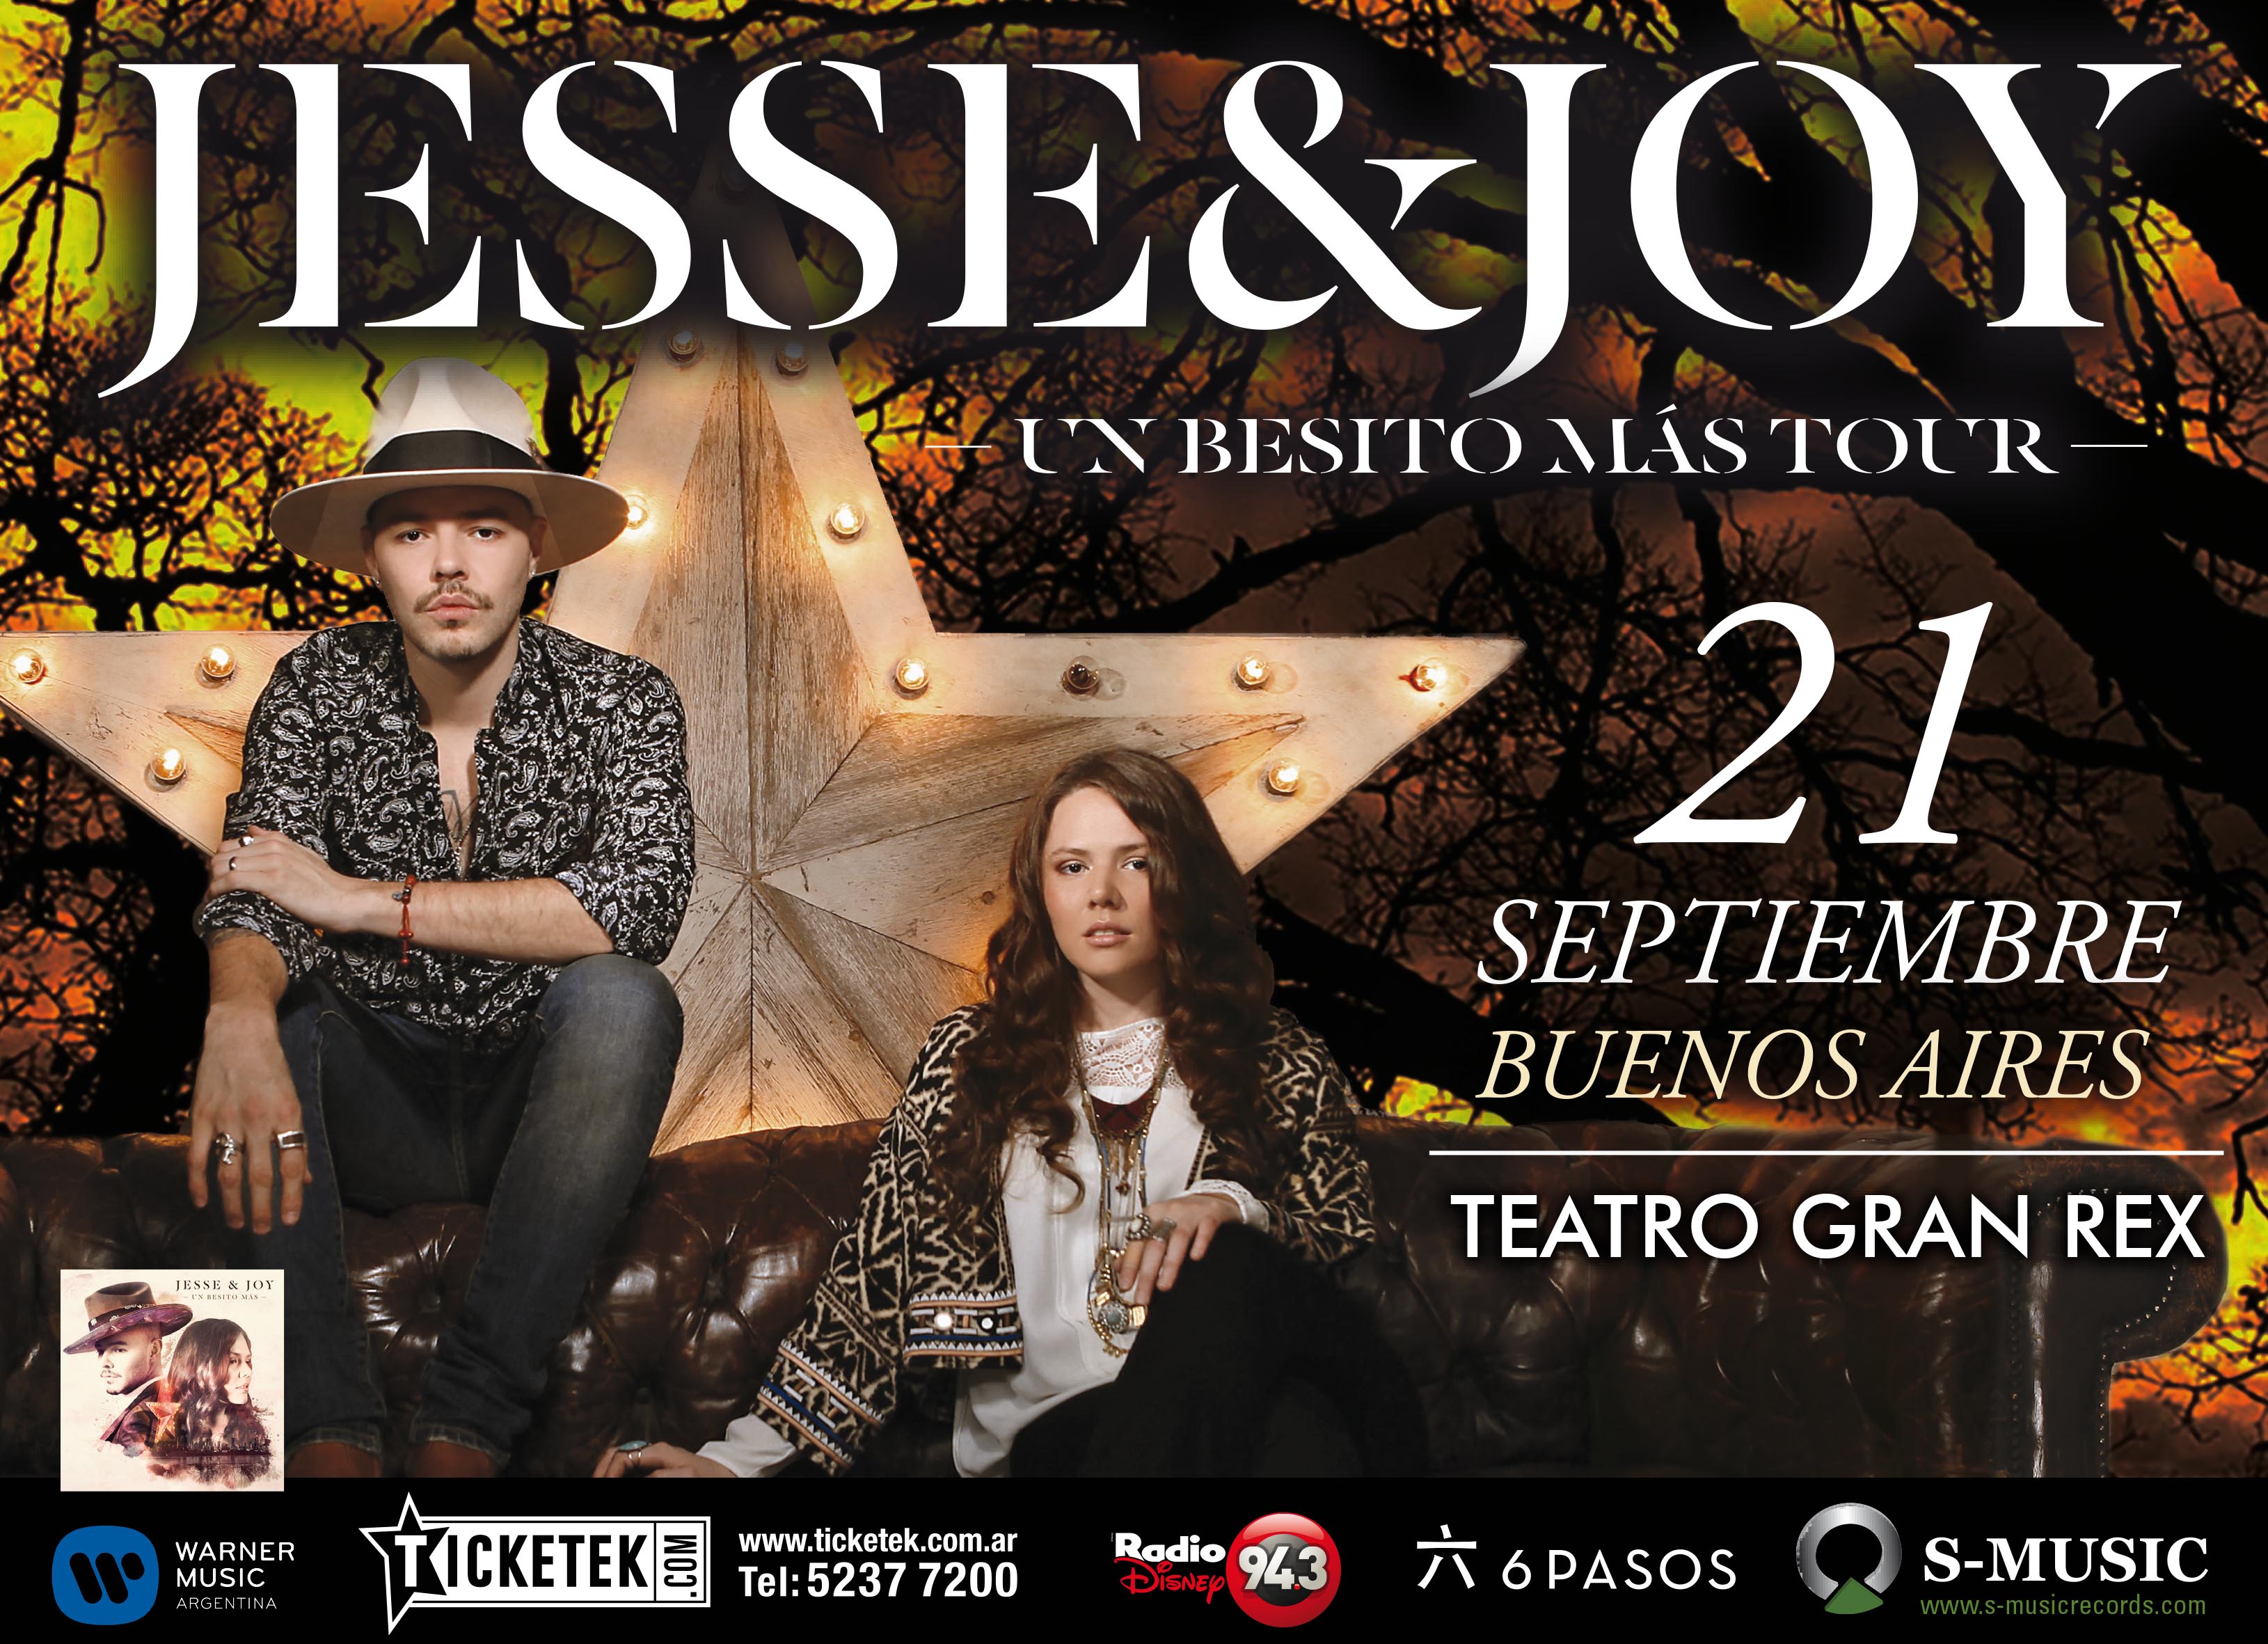 Jesse & Joy – «Un Besito Mas» Tour en Argentina!